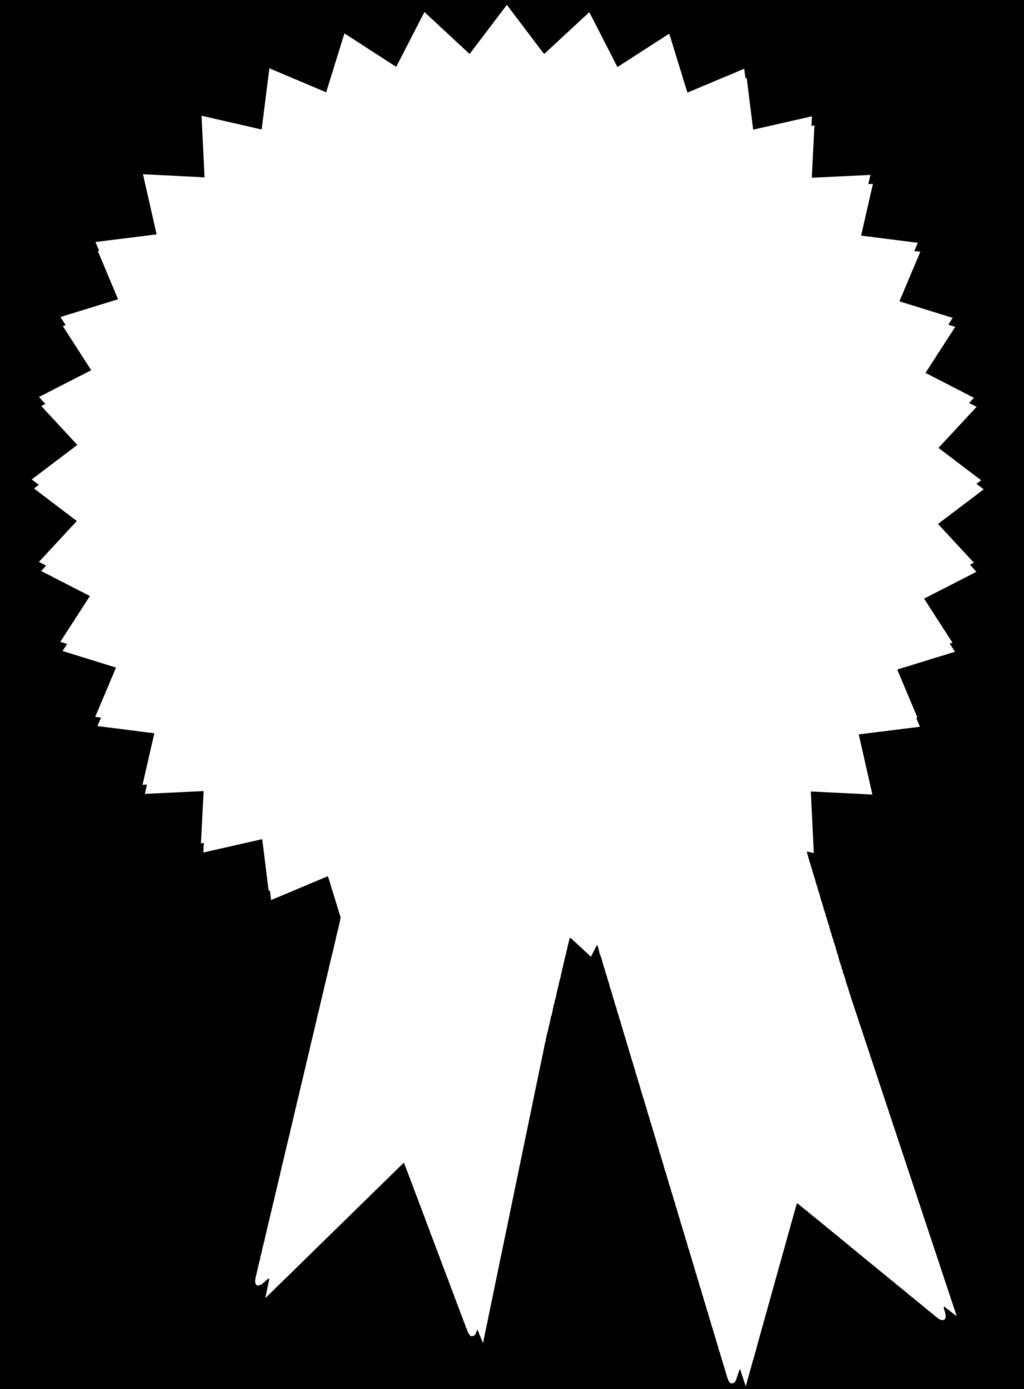 Protocol Radia Perlman firma más de 100 patentes, ha recibido premios